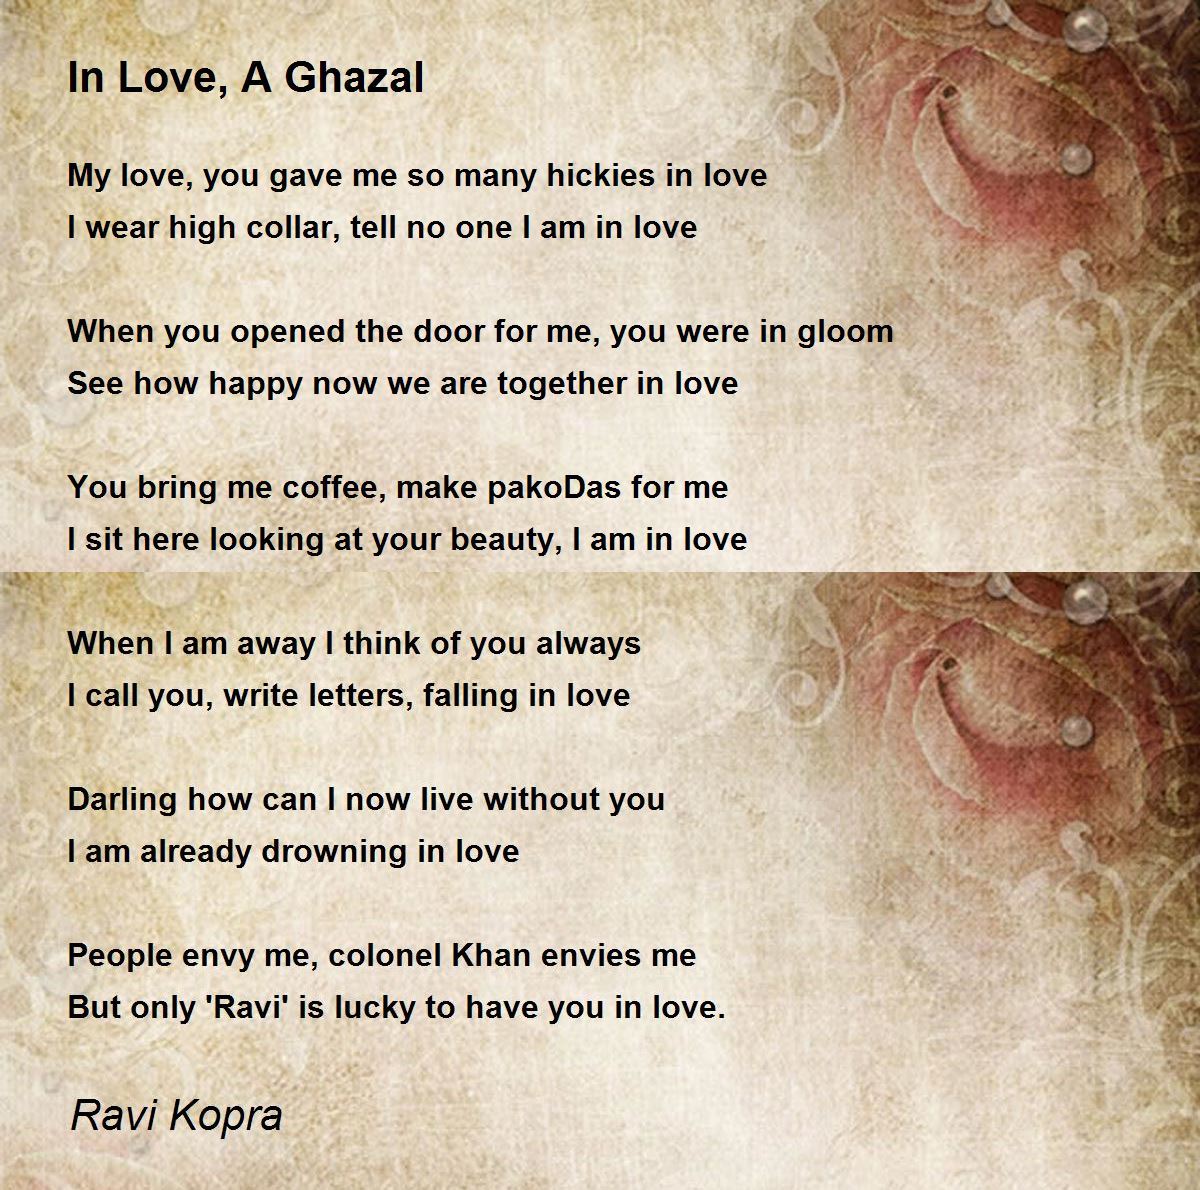 In Love, A Ghazal - In Love, A Ghazal Poem by Ravi Kopra